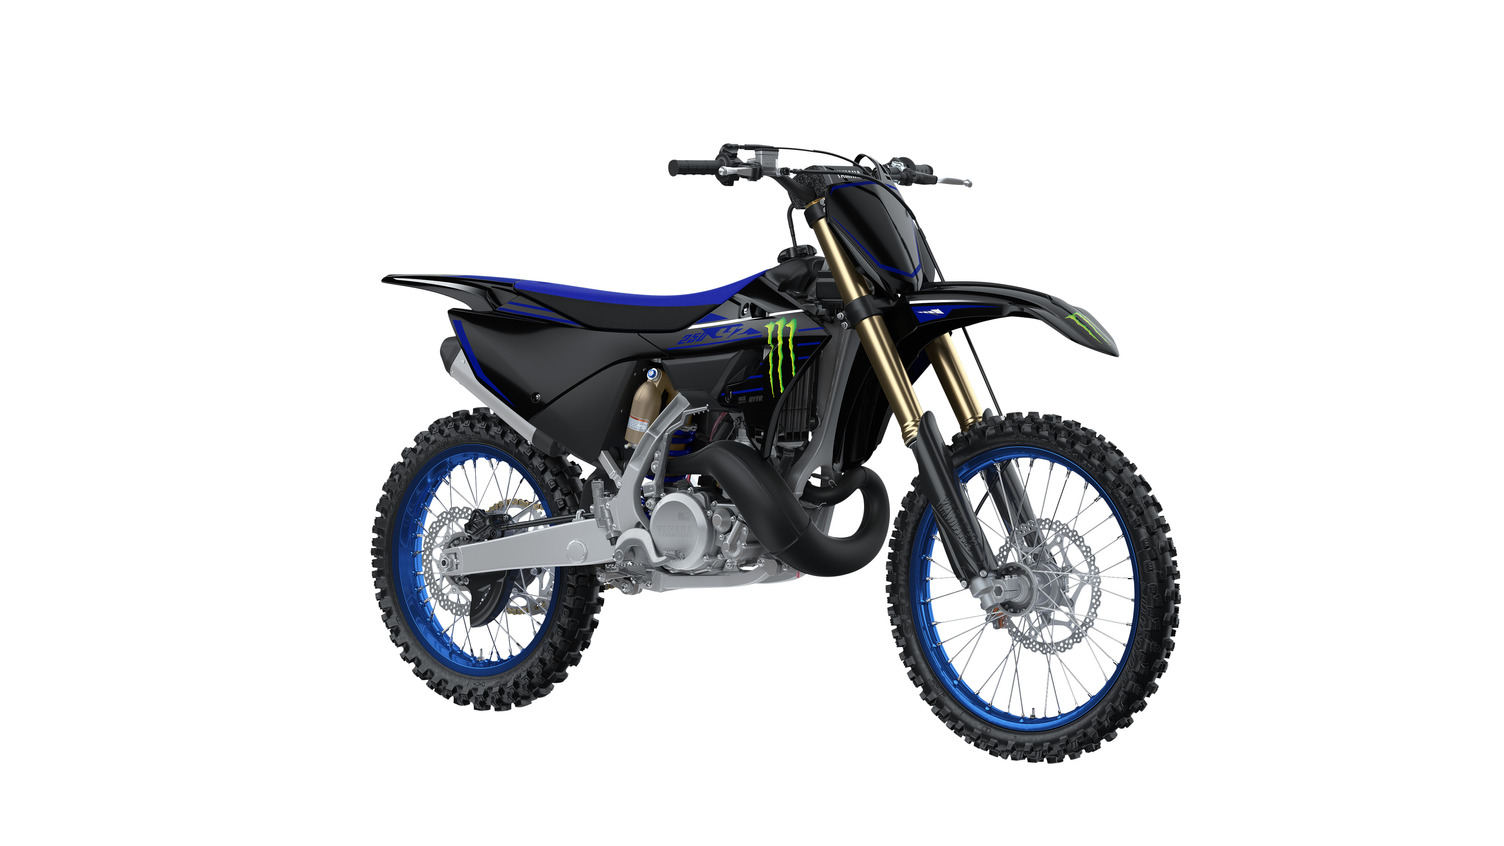 New 2022 Monster Energy® Yamaha Racing Edition YZ250